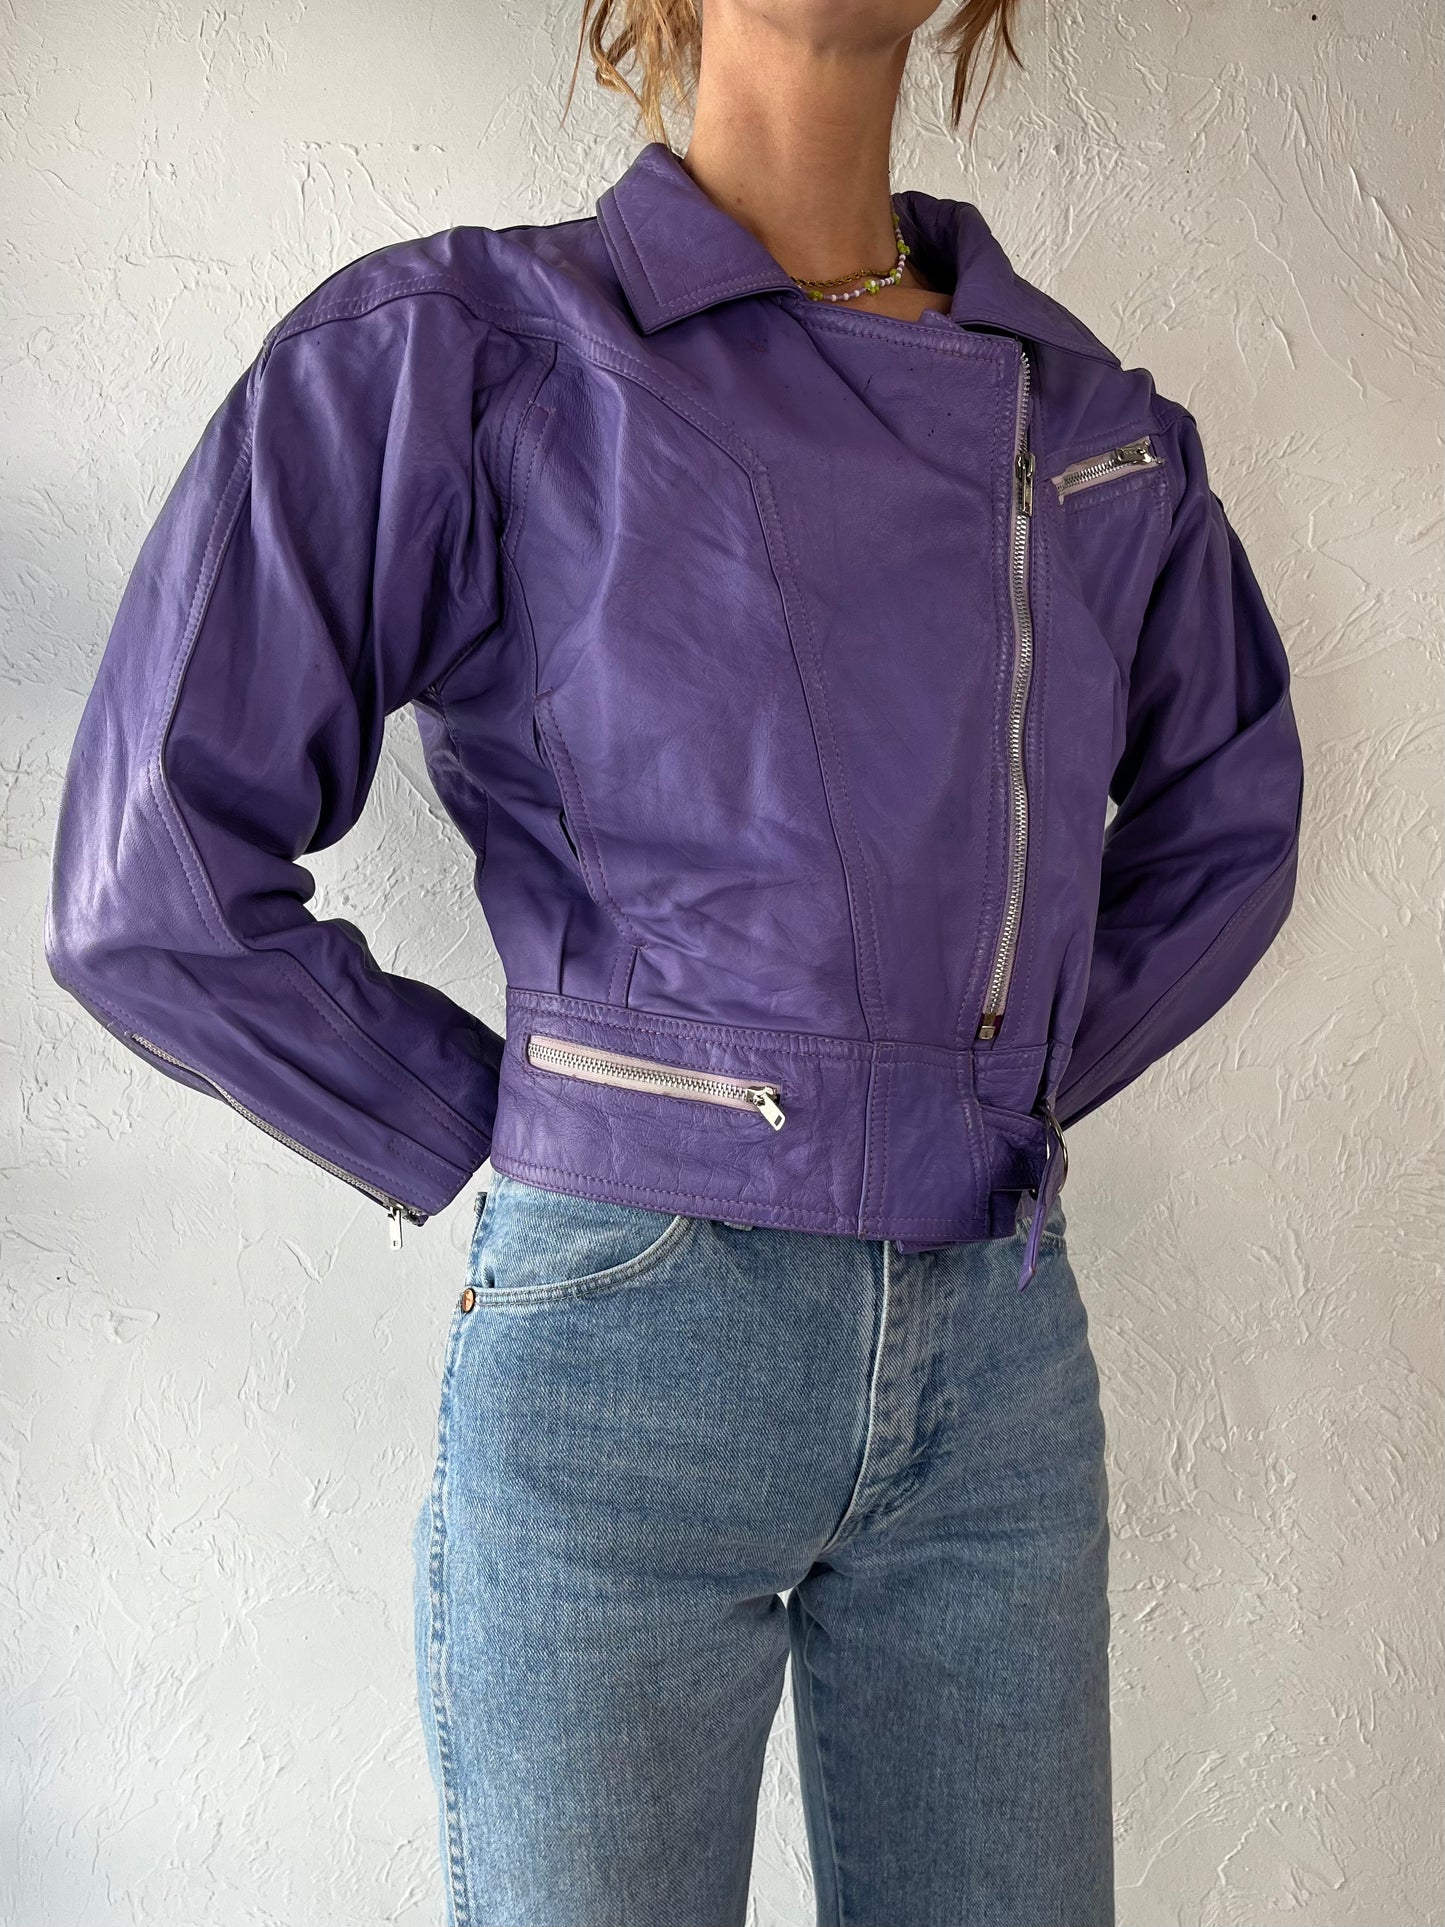 90s 'Khjana Imports' Purple Leather Moto Jacket / Medium